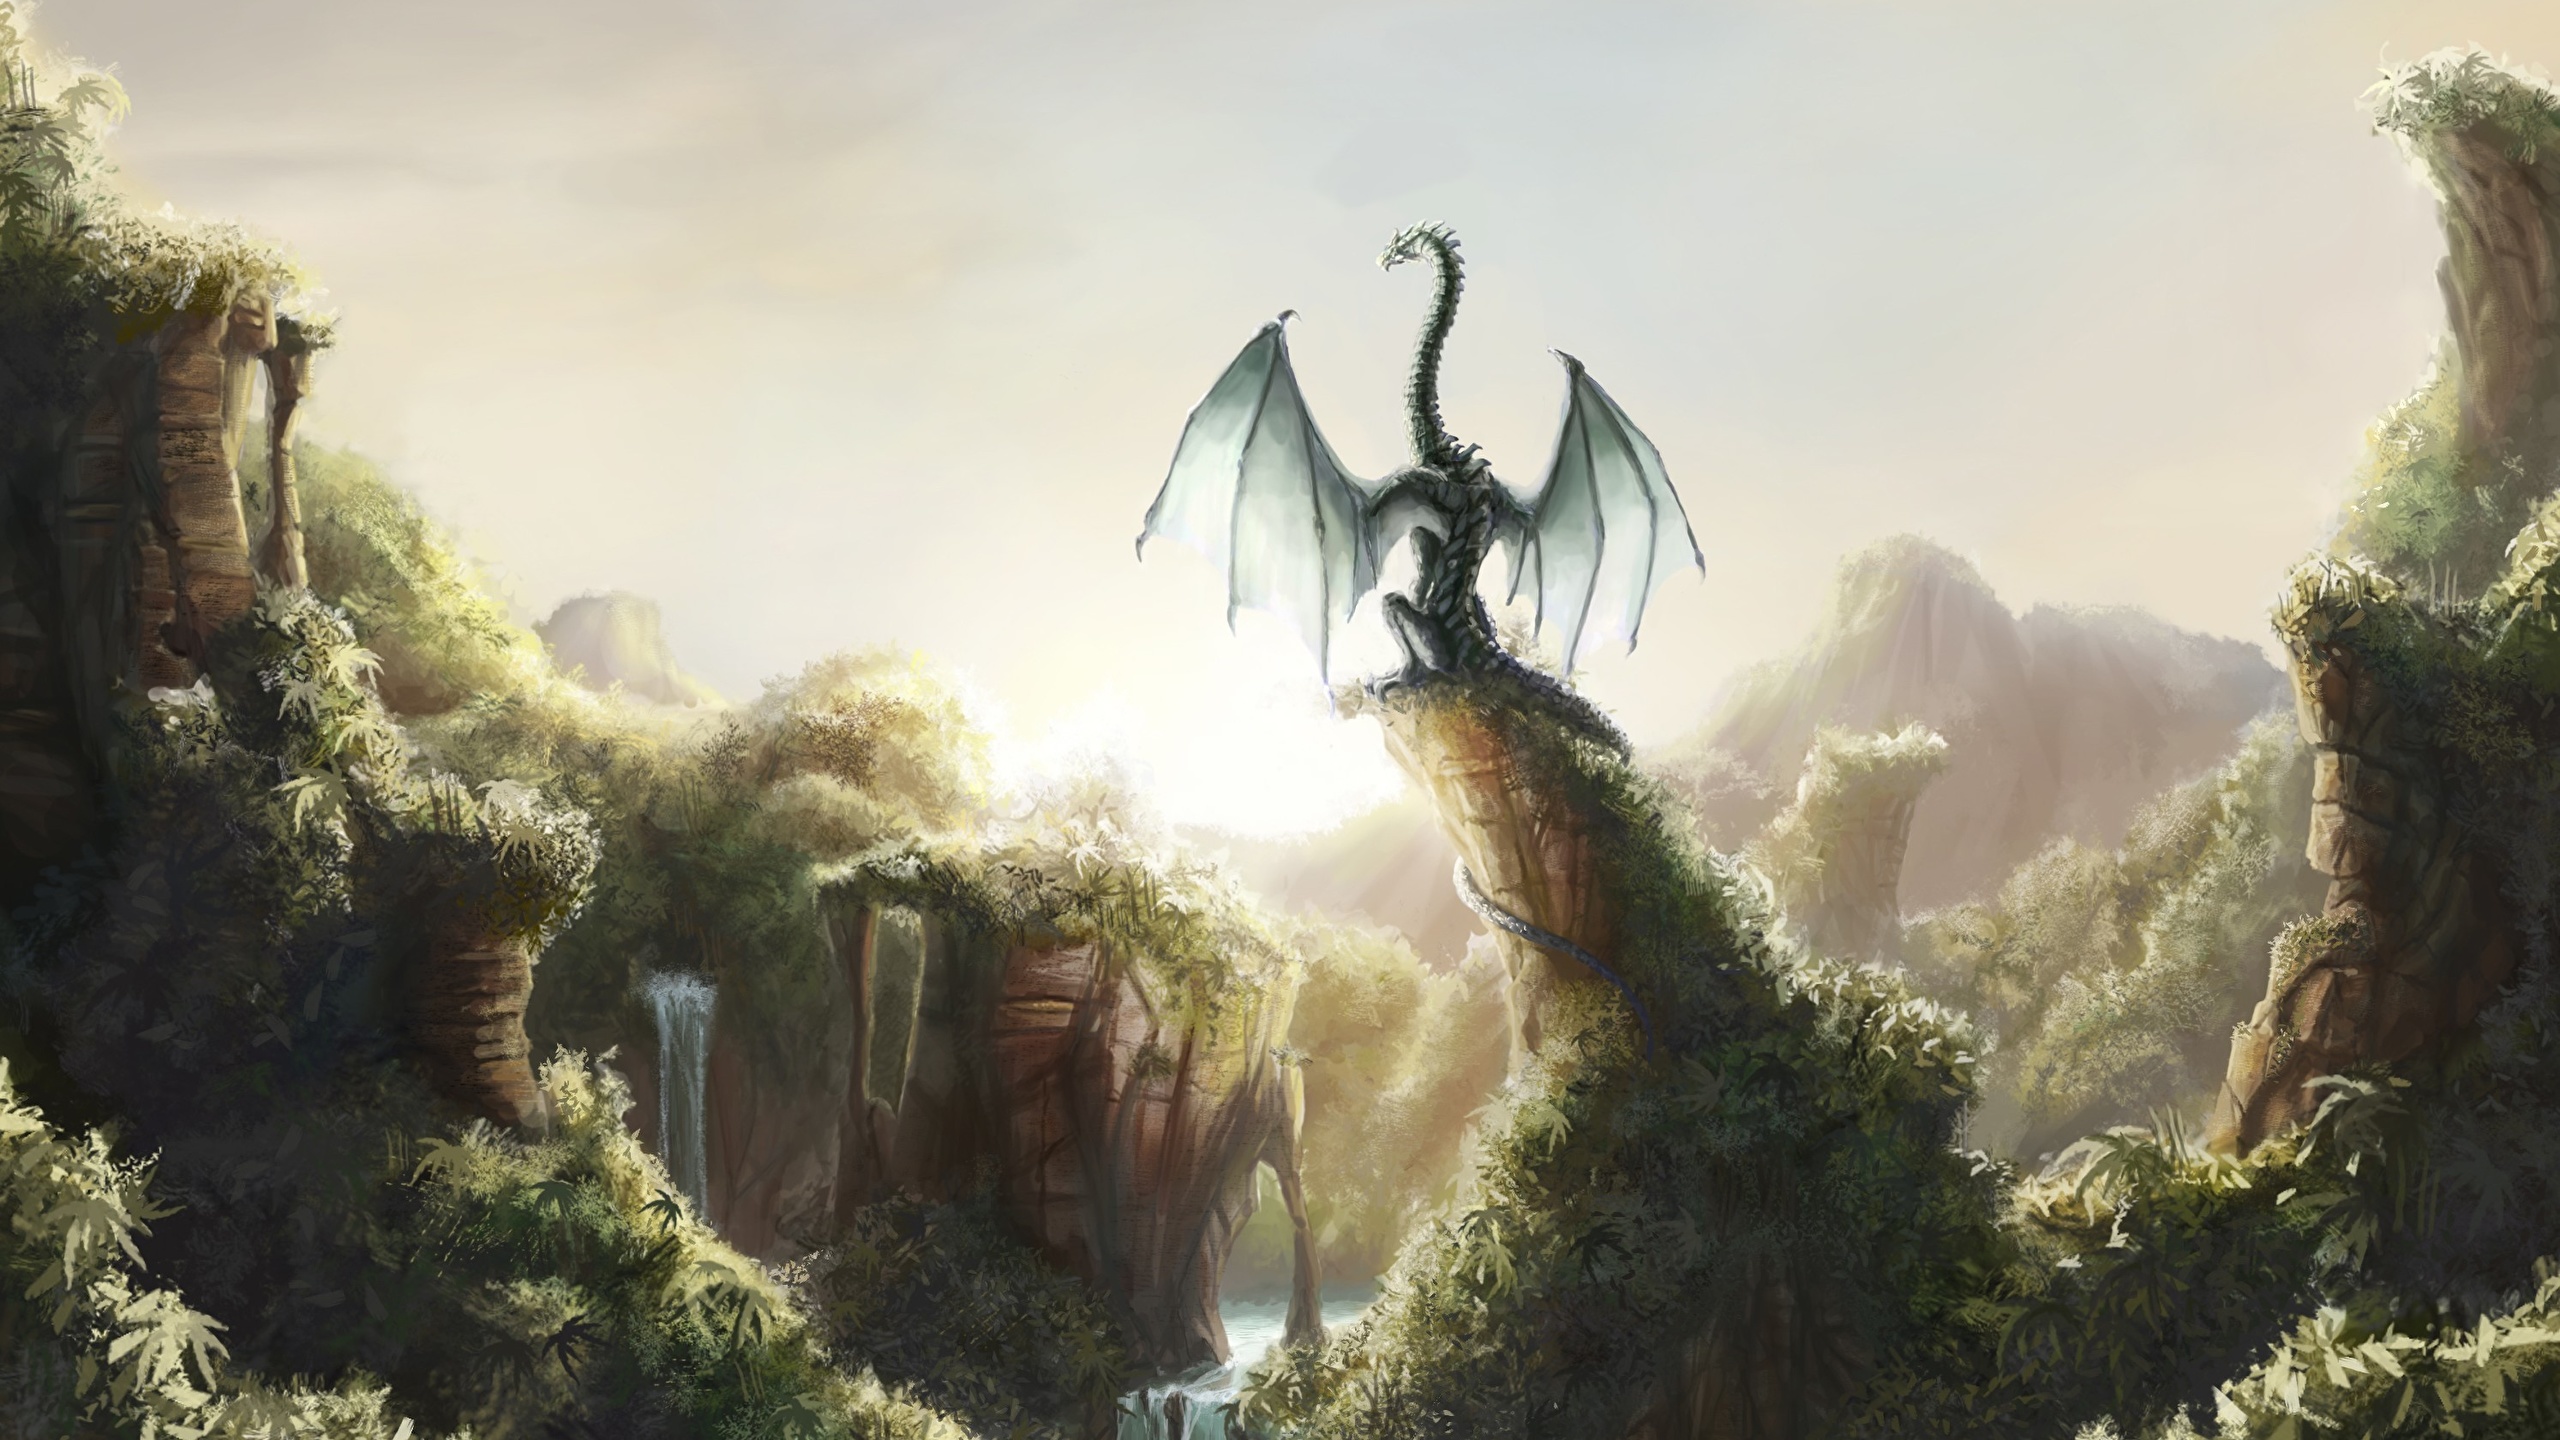 壁紙 2560x1440 ドラゴン 幻想的な世界 ファンタジー ダウンロード 写真